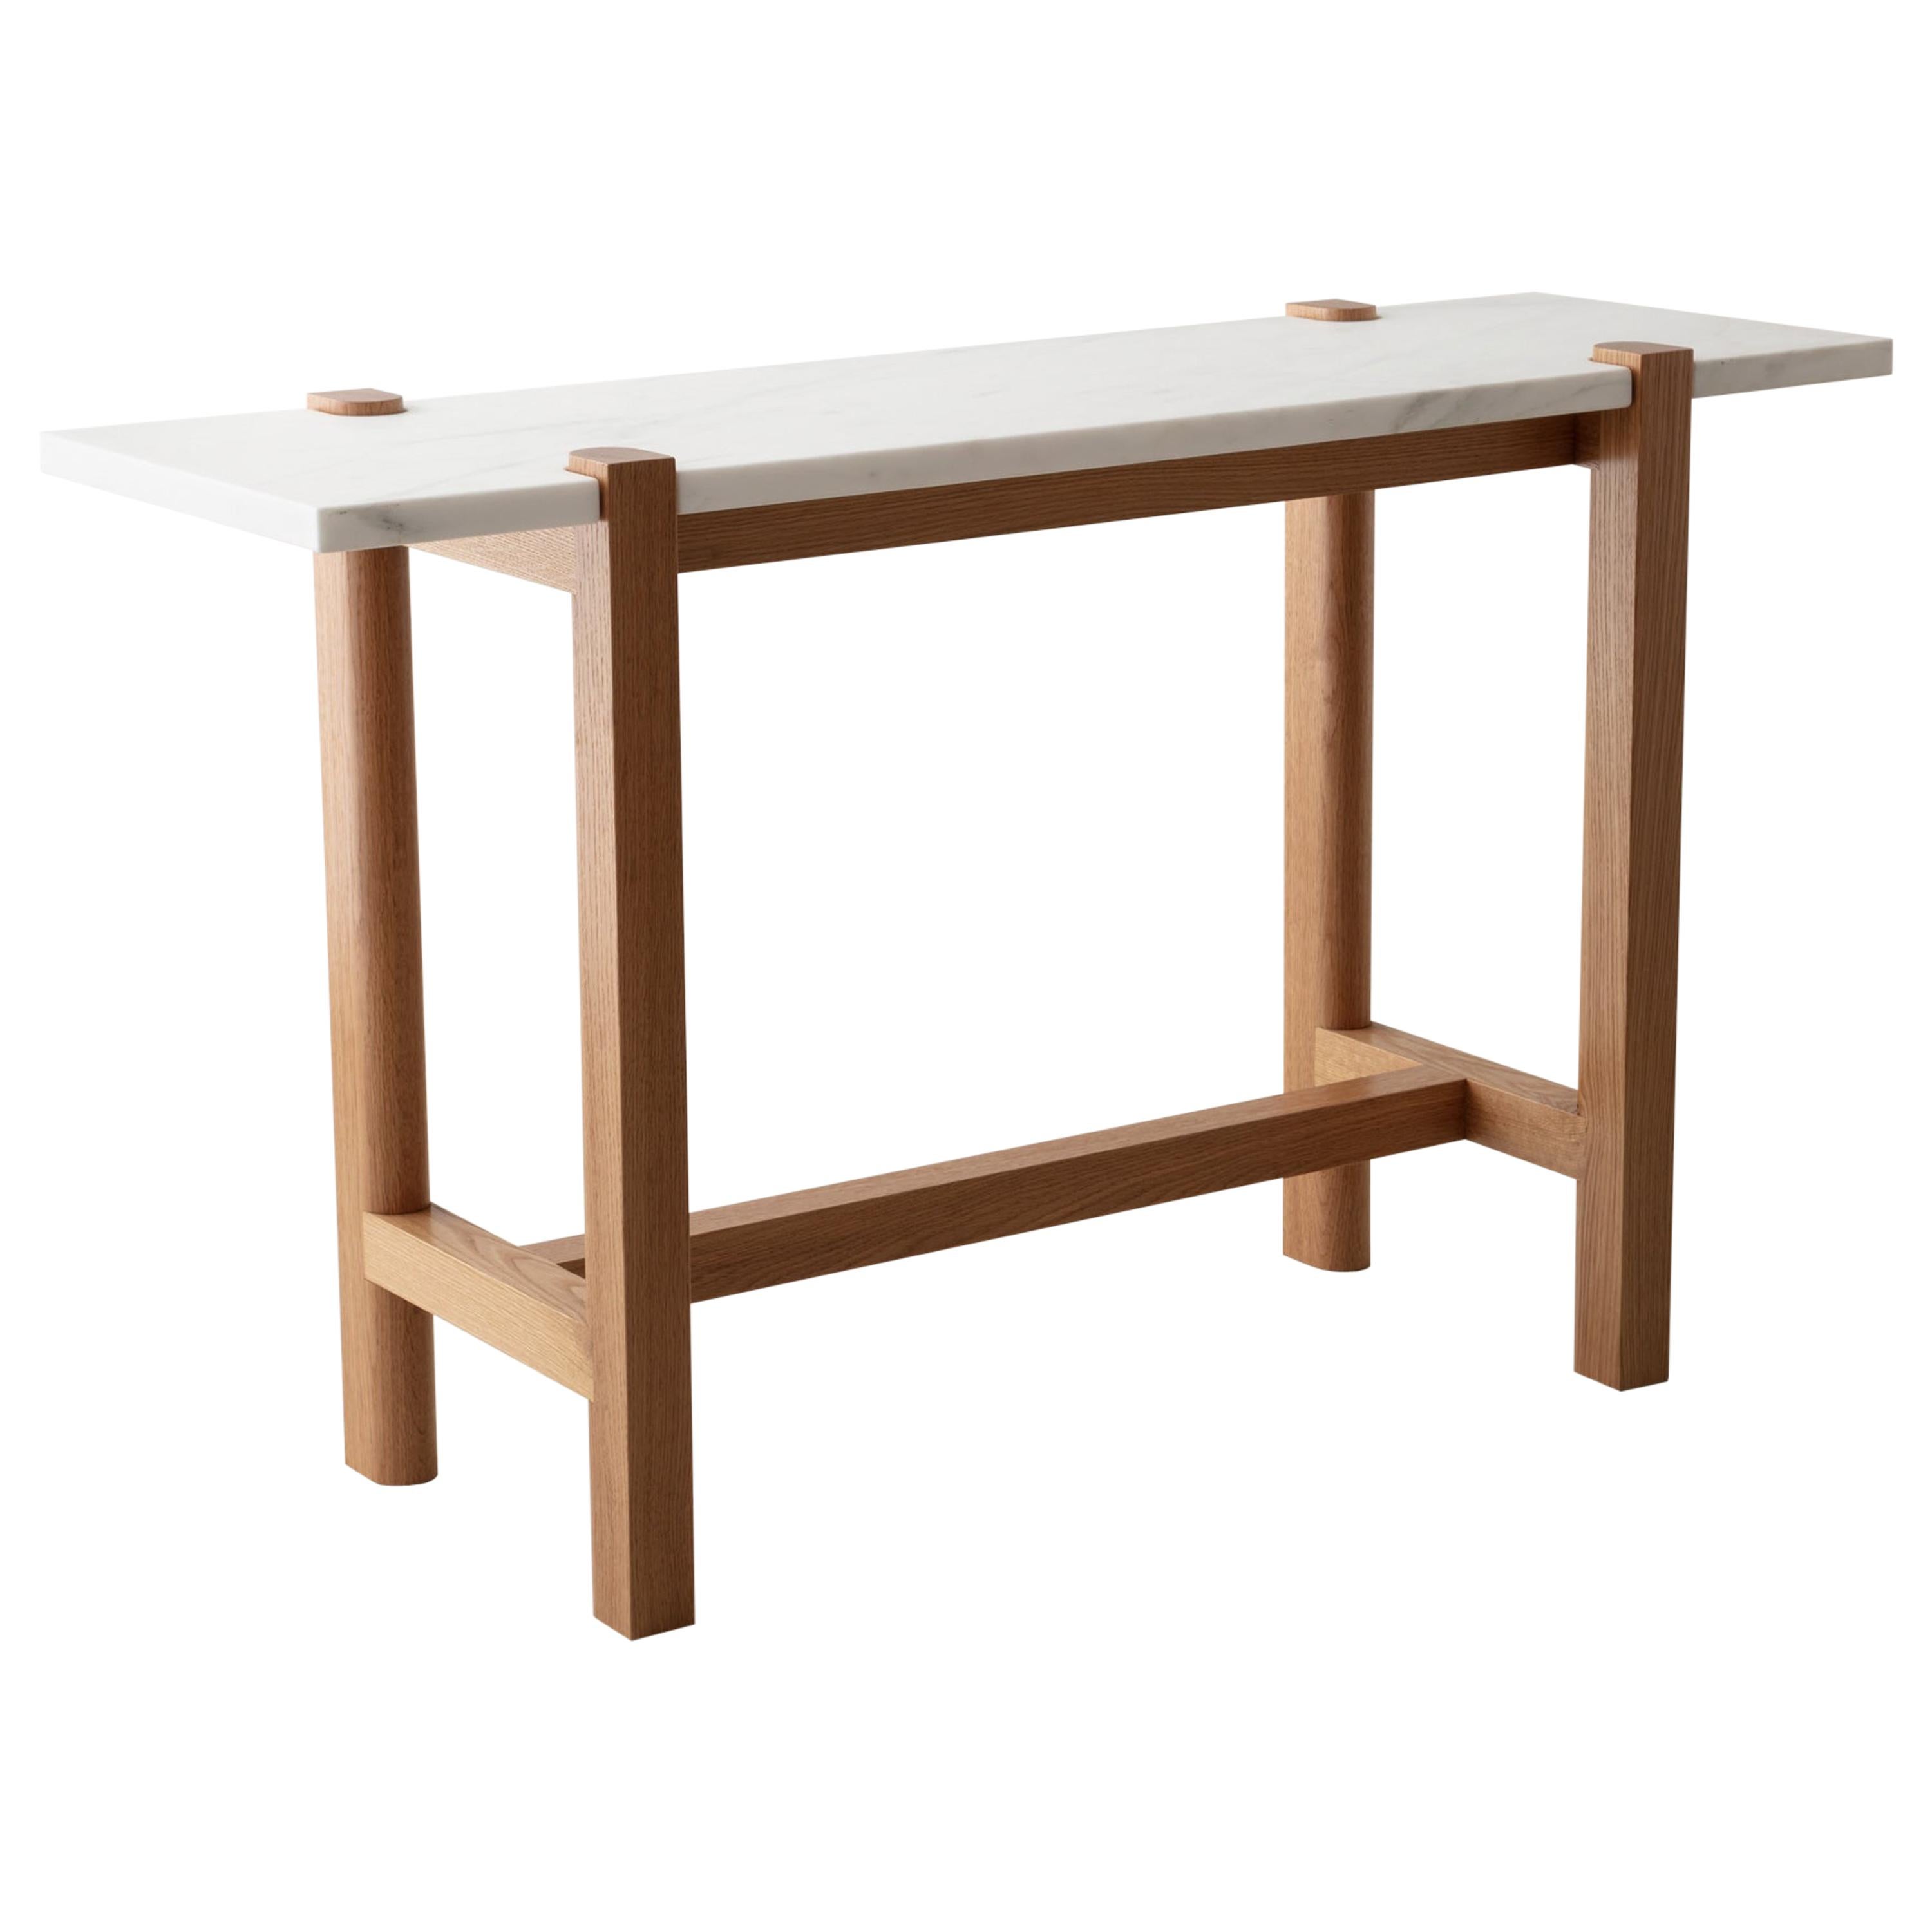 Pierce Console, Sofa Table, White Oak Hardwood, Carrara Marble, Made to Measure